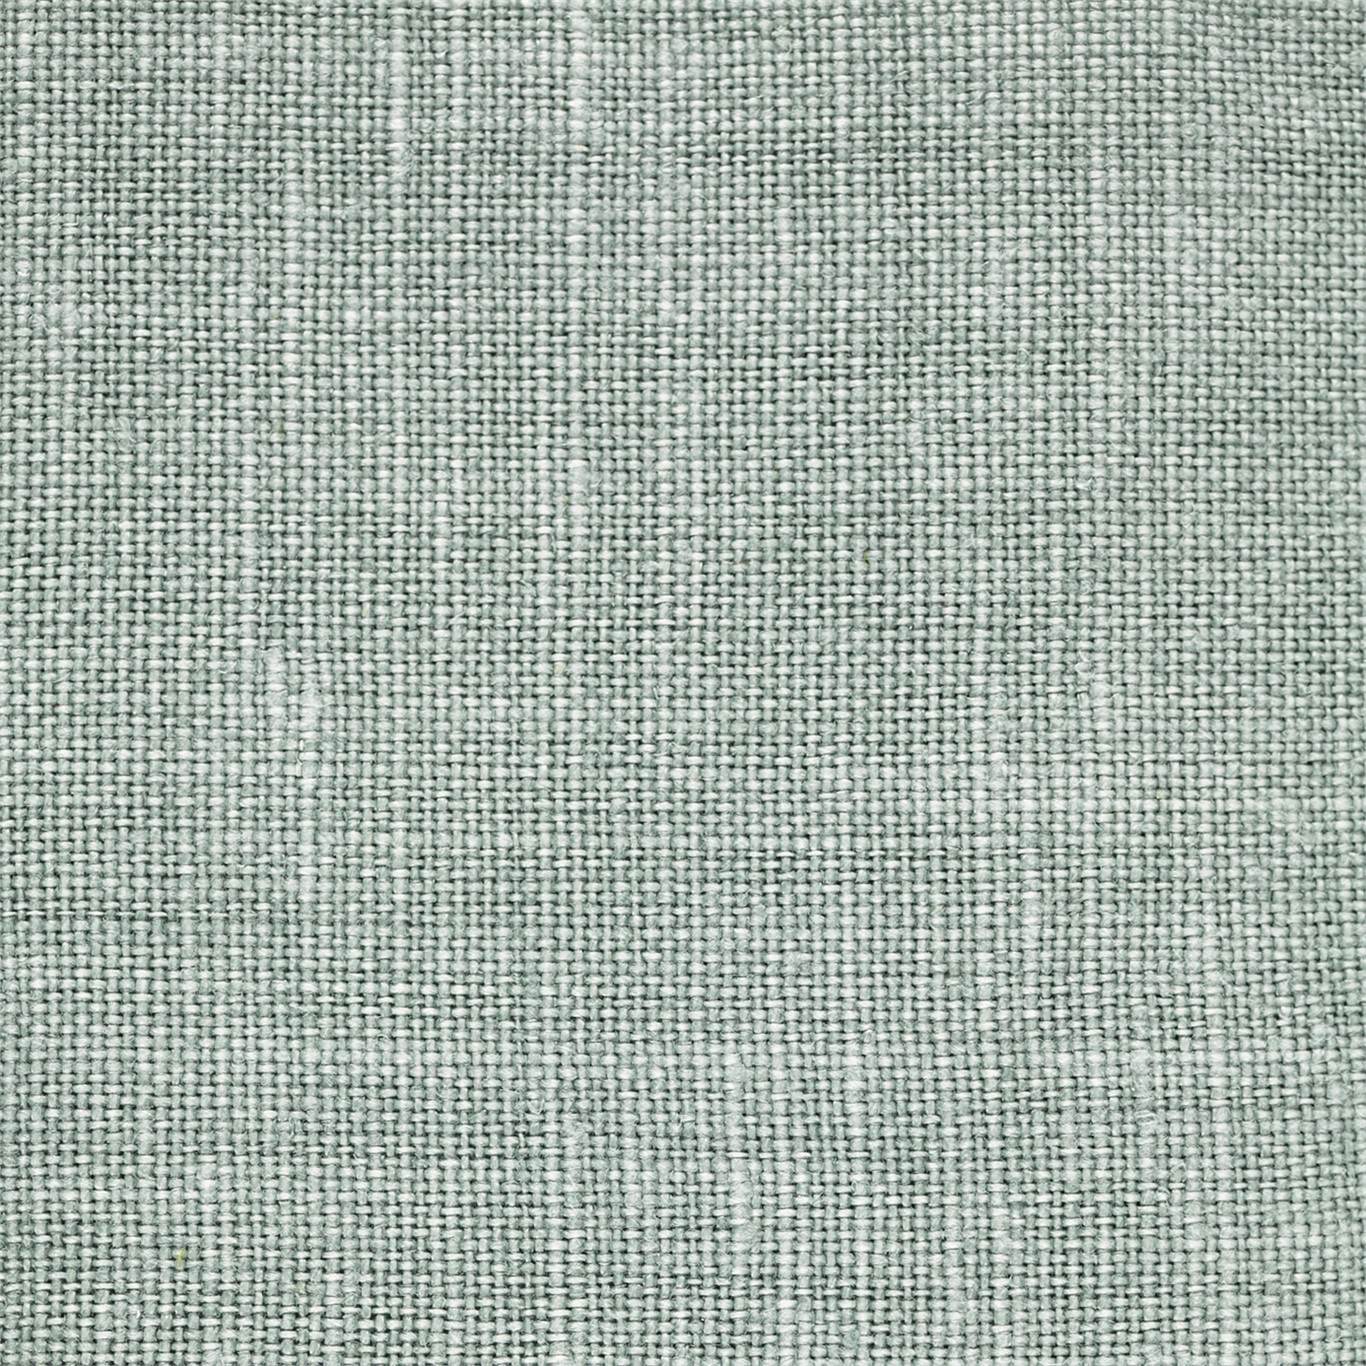 Cybele La Seine Fabric by ZOF